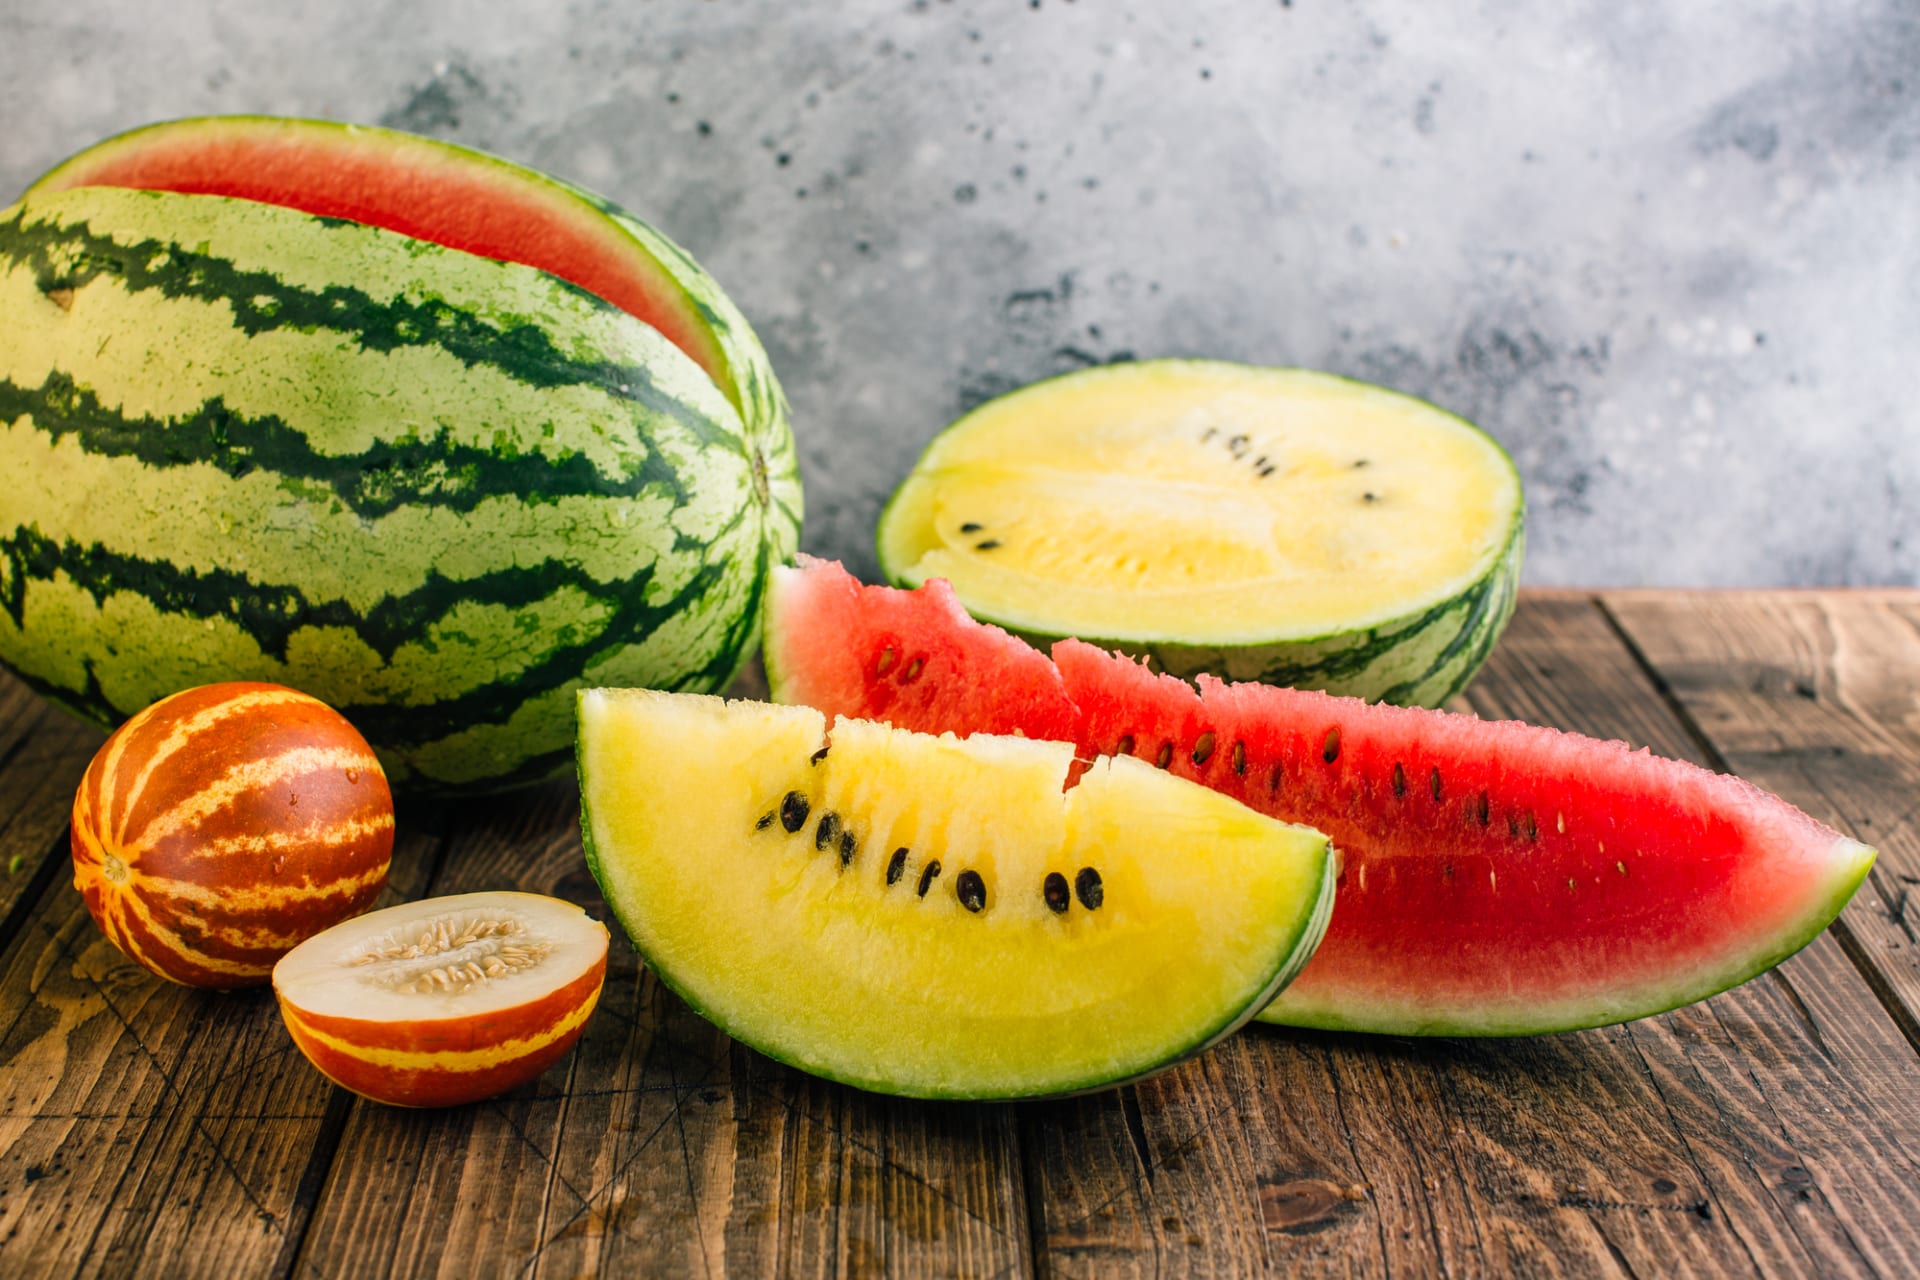 Vodní melouny nejsou jen červené, ale známe i kultivary žluté, bílé nebo oranžové